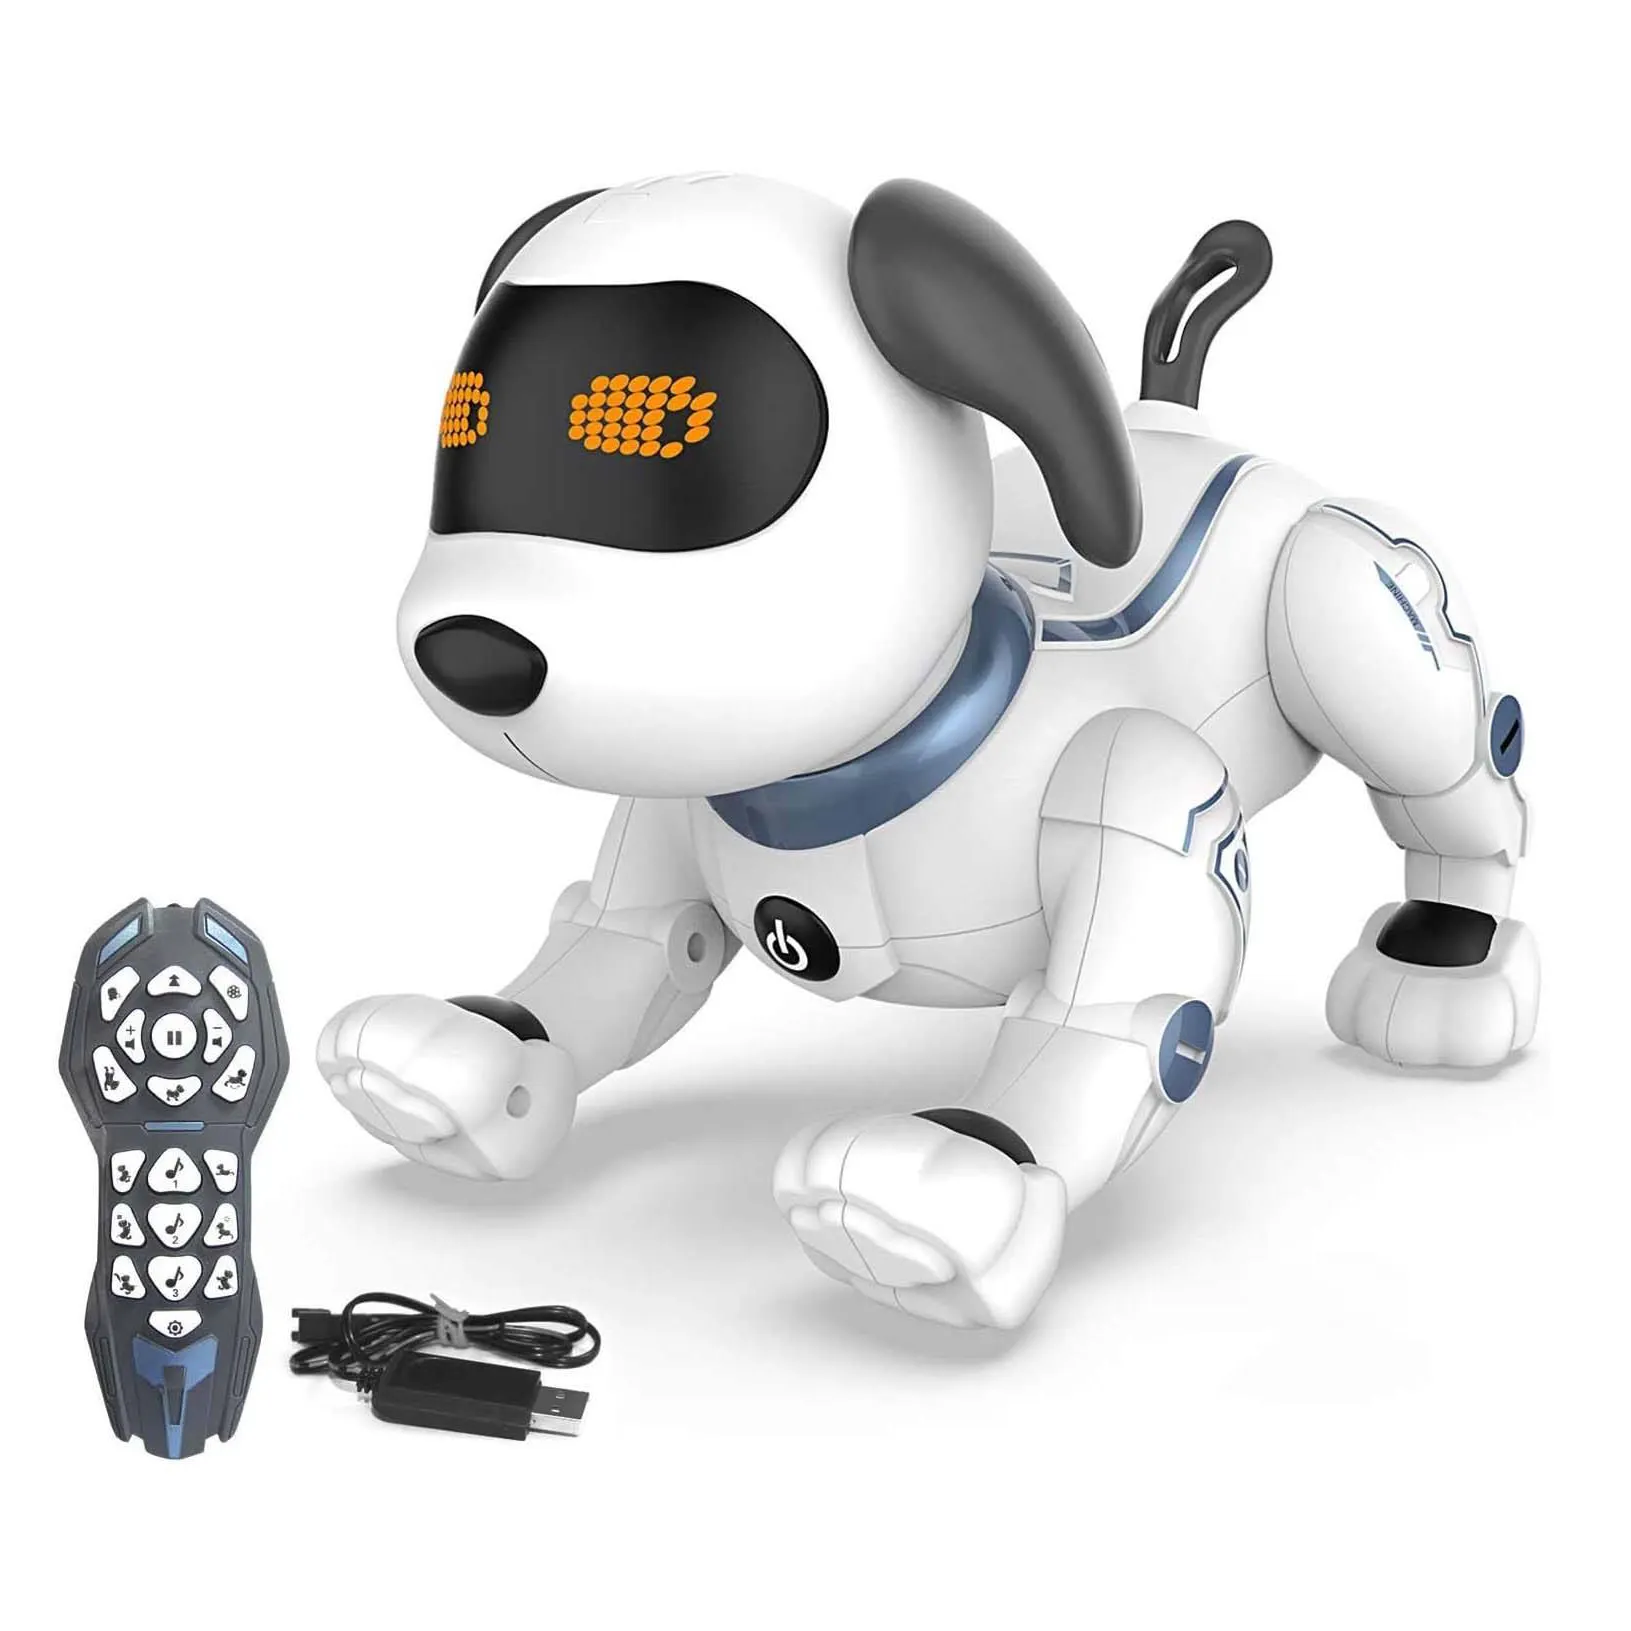 Mainan Robot Remote Control untuk anak-anak, RC Stunt diprogram Robot anak anjing mainan bernyanyi, menari, jalan-jalan, anjing hewan peliharaan elektronik